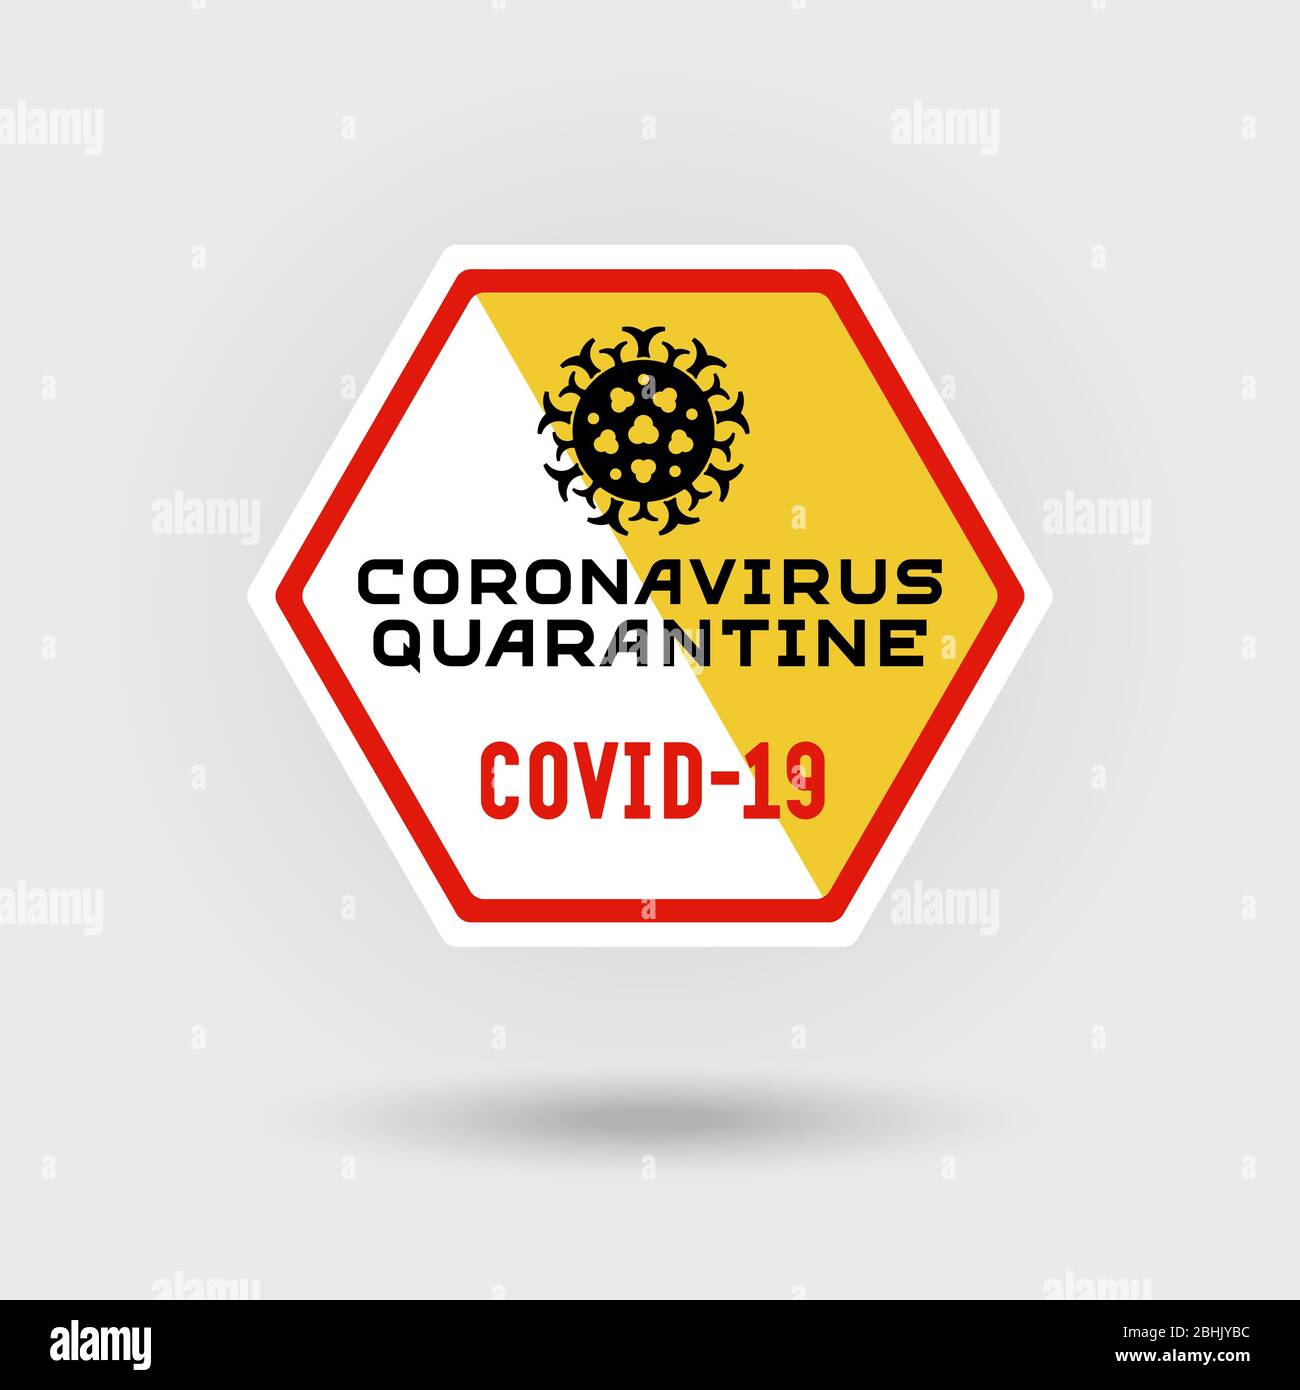 COVID-19 segnale di avvertenza per coronavirus. Include un'icona stilizzata di infezione da virus. Il messaggio avverte della quarantena. Design esagonale. Illustrazione Vettoriale